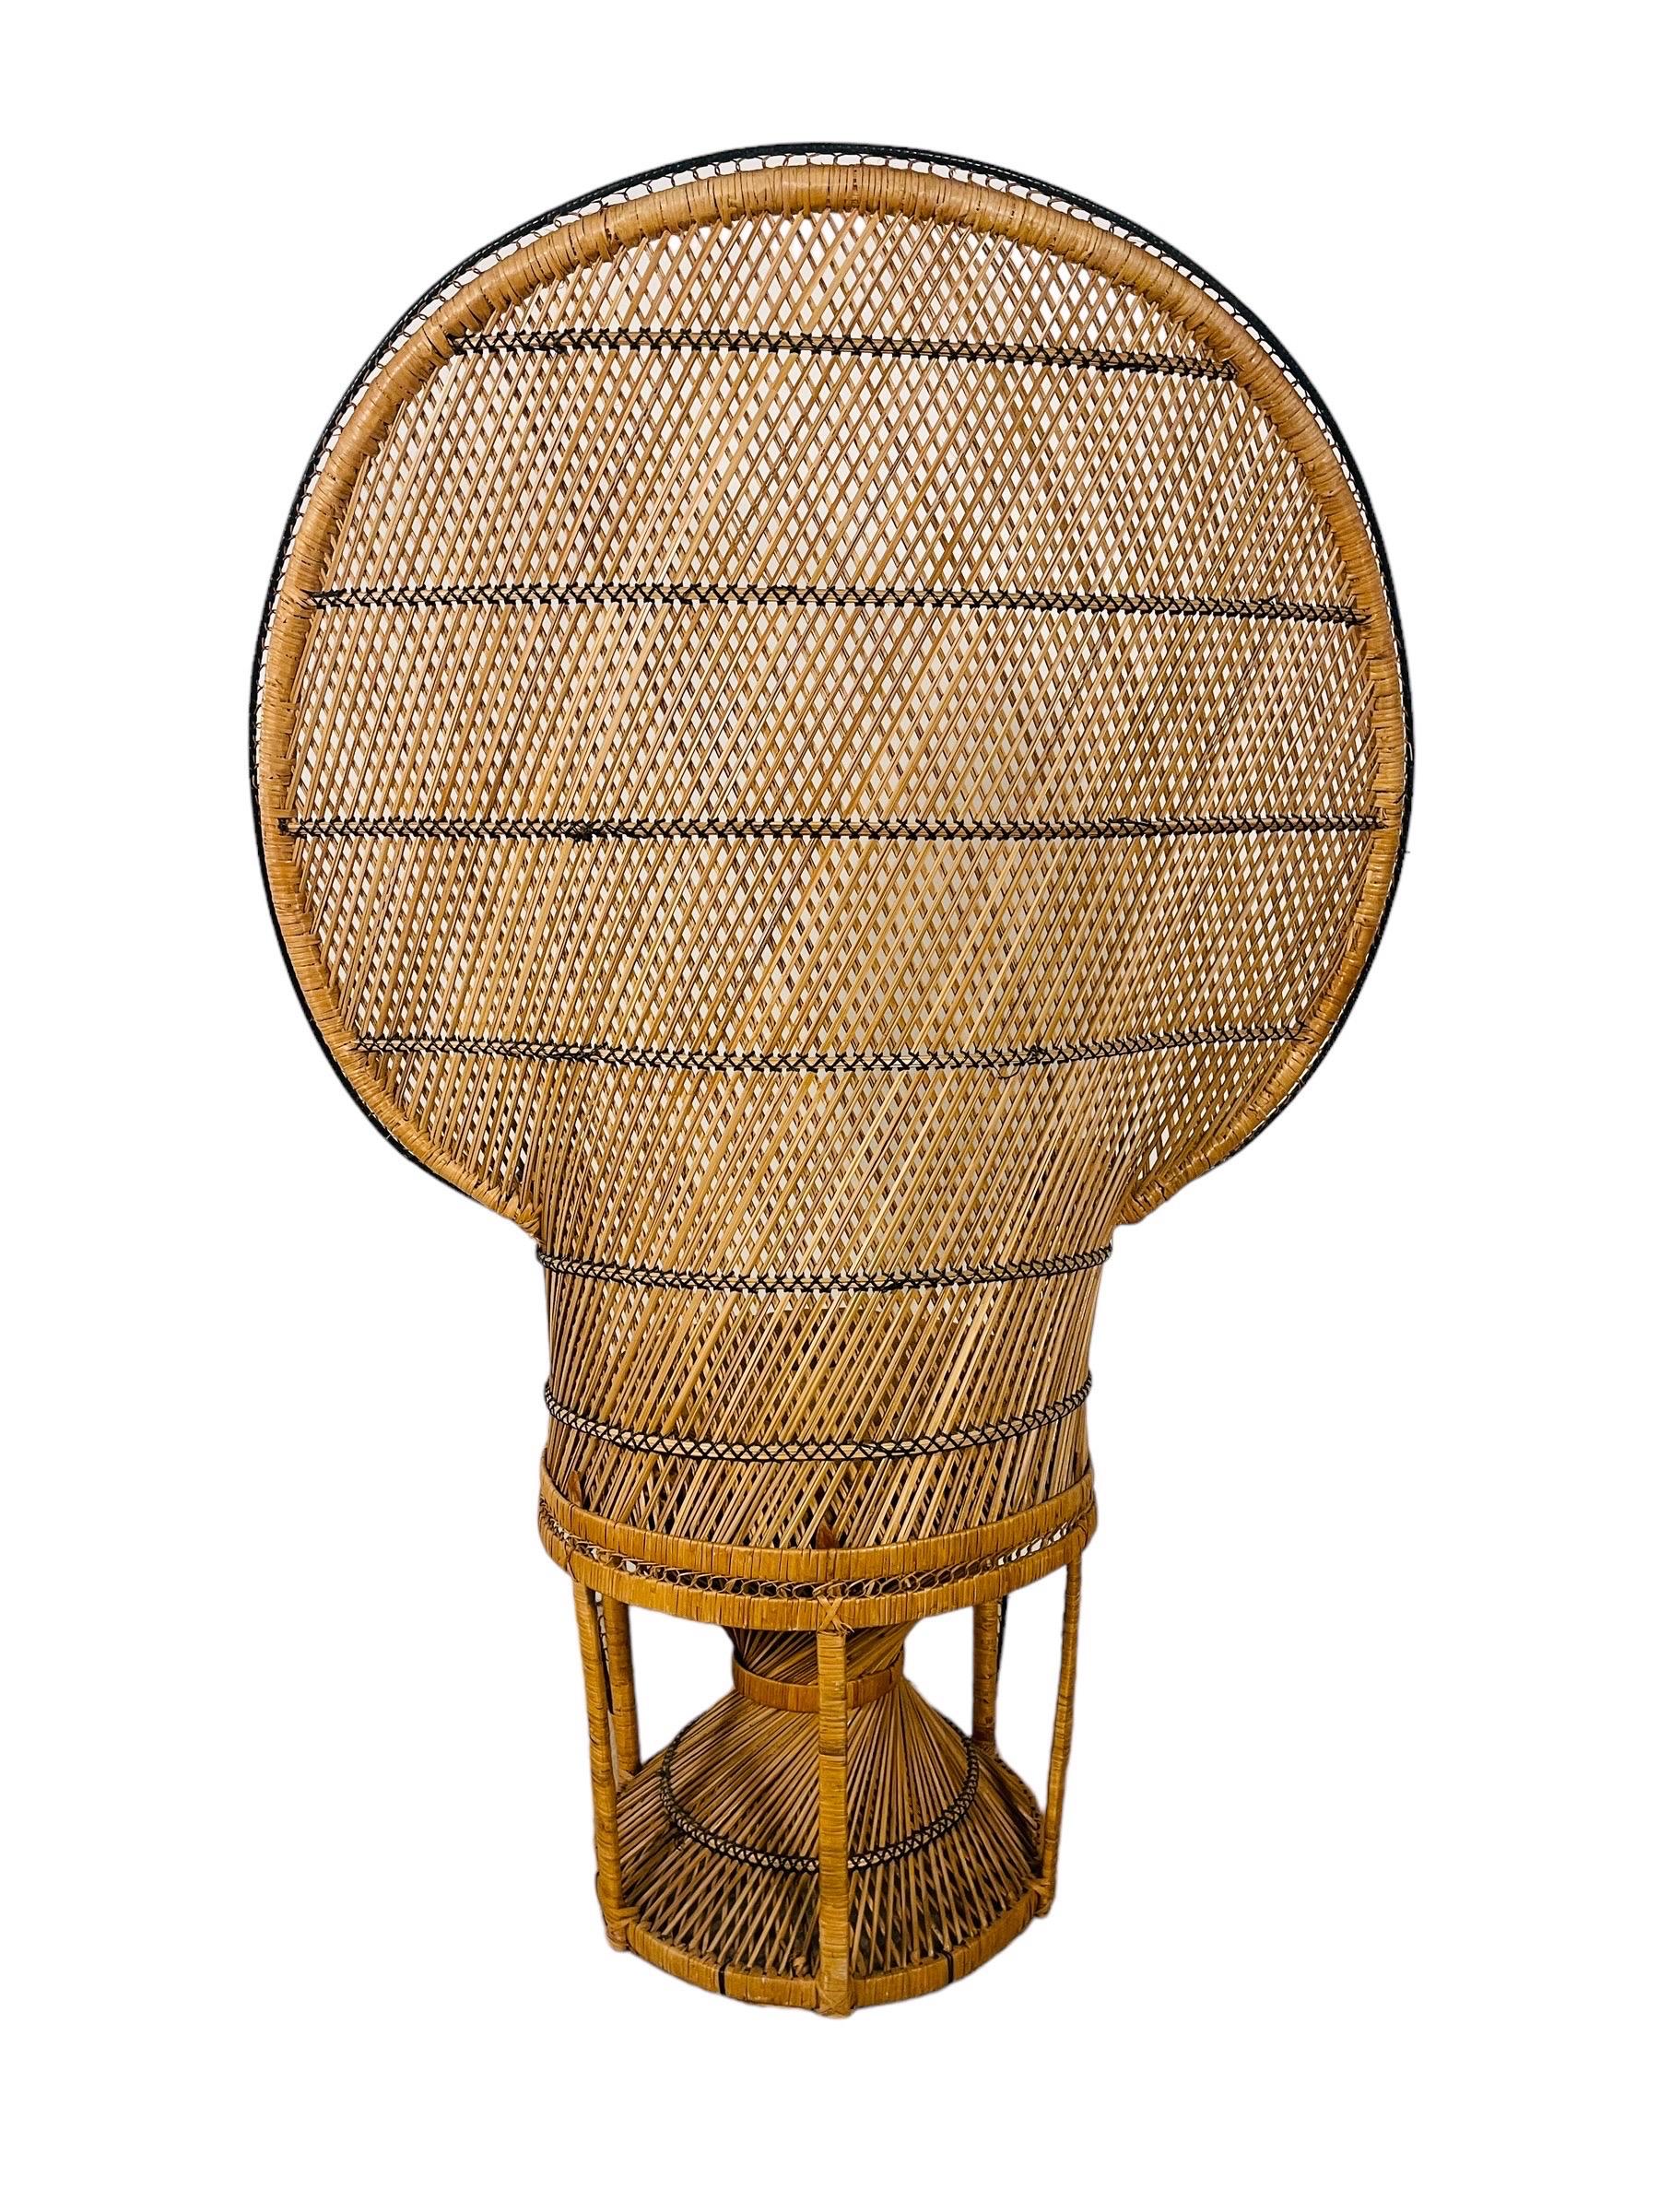 Lassen Sie sich vom Charme der Bohème verzaubern mit dem Vintage Boho Chic Wicker Rattan Peacock Chair. In seiner majestätischen Erscheinung ist dieser Stuhl 59 Zoll hoch mit einer großzügigen Flügelspannweite von 41 Zoll, wodurch eine